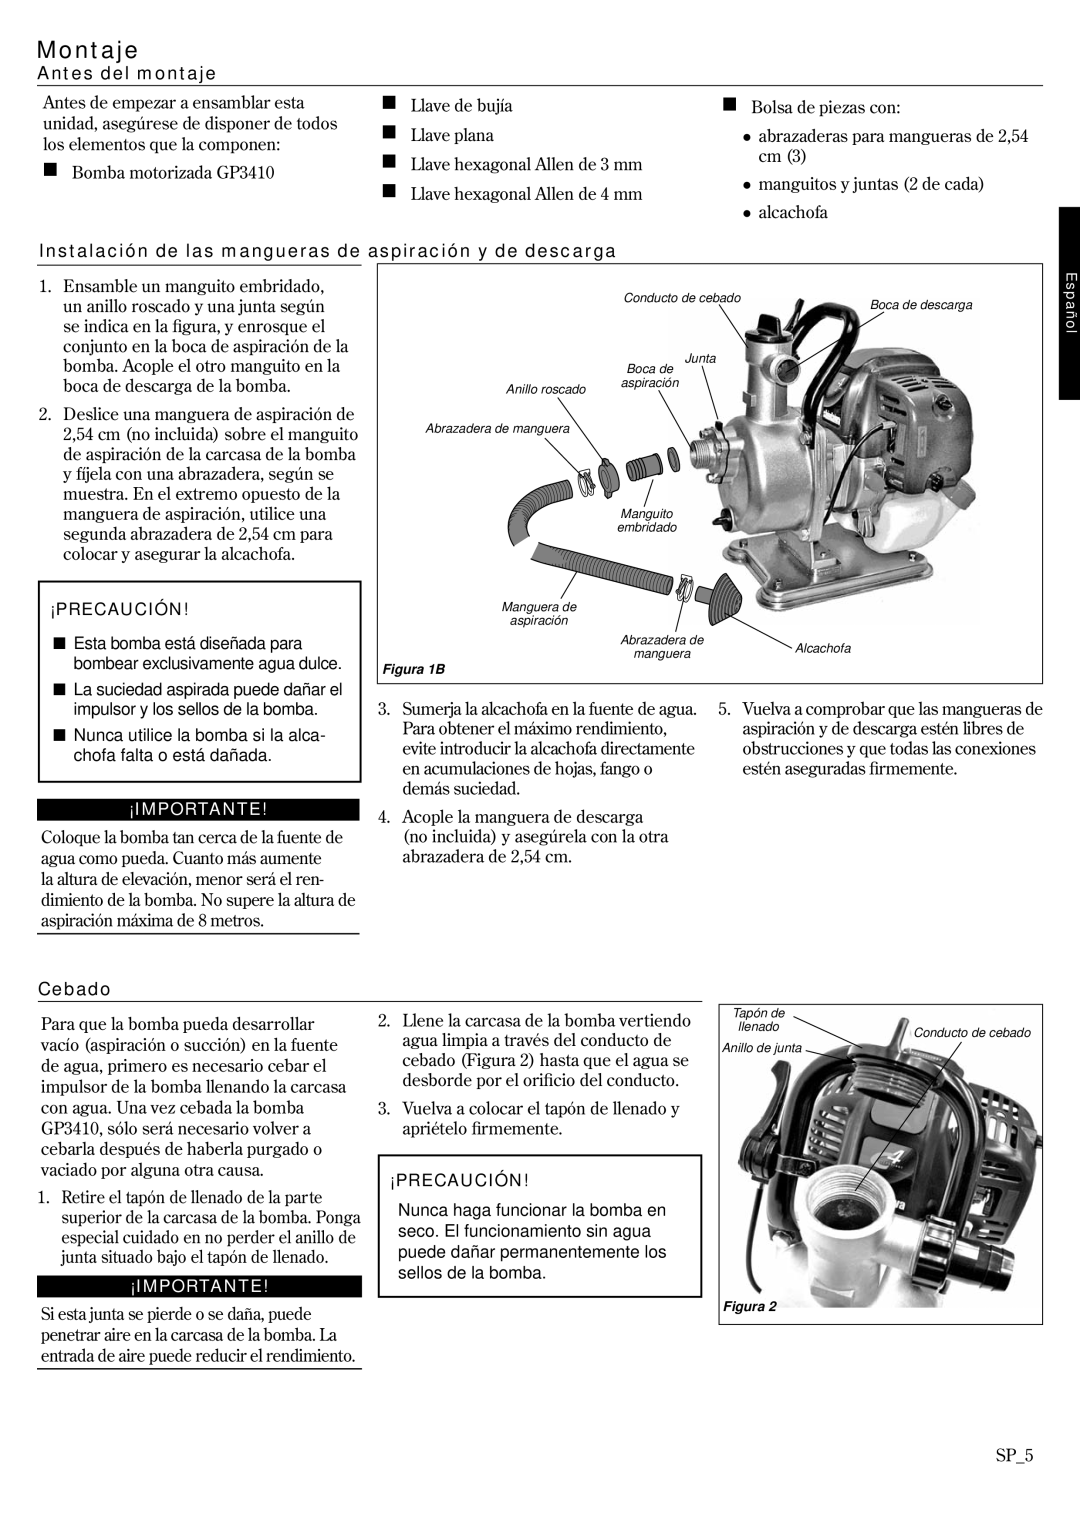 Shindaiwa GP3410, 6850-9430 manual Montaje, Antes del montaje, ¡Precaución, ¡Importante, Cebado 